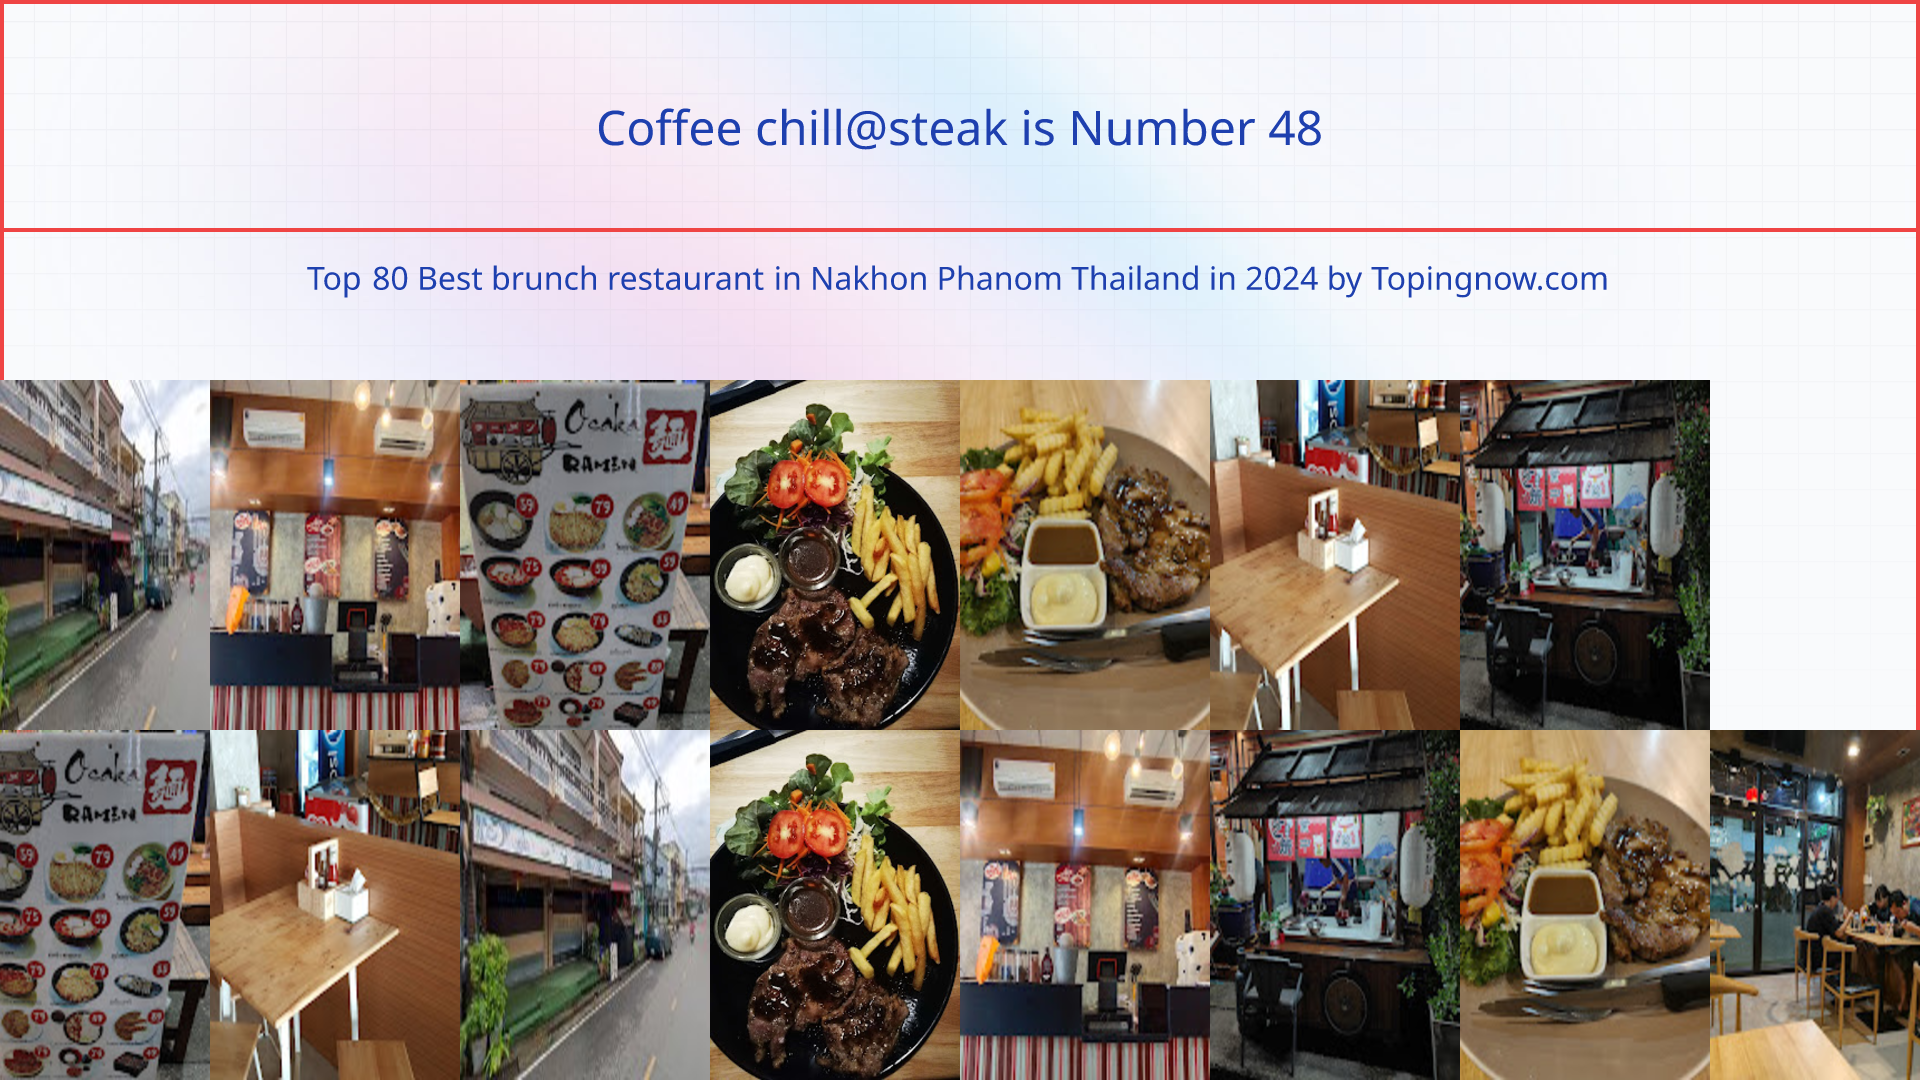 Coffee chill@steak: Top 80 Best brunch restaurant in Nakhon Phanom Thailand in 2024